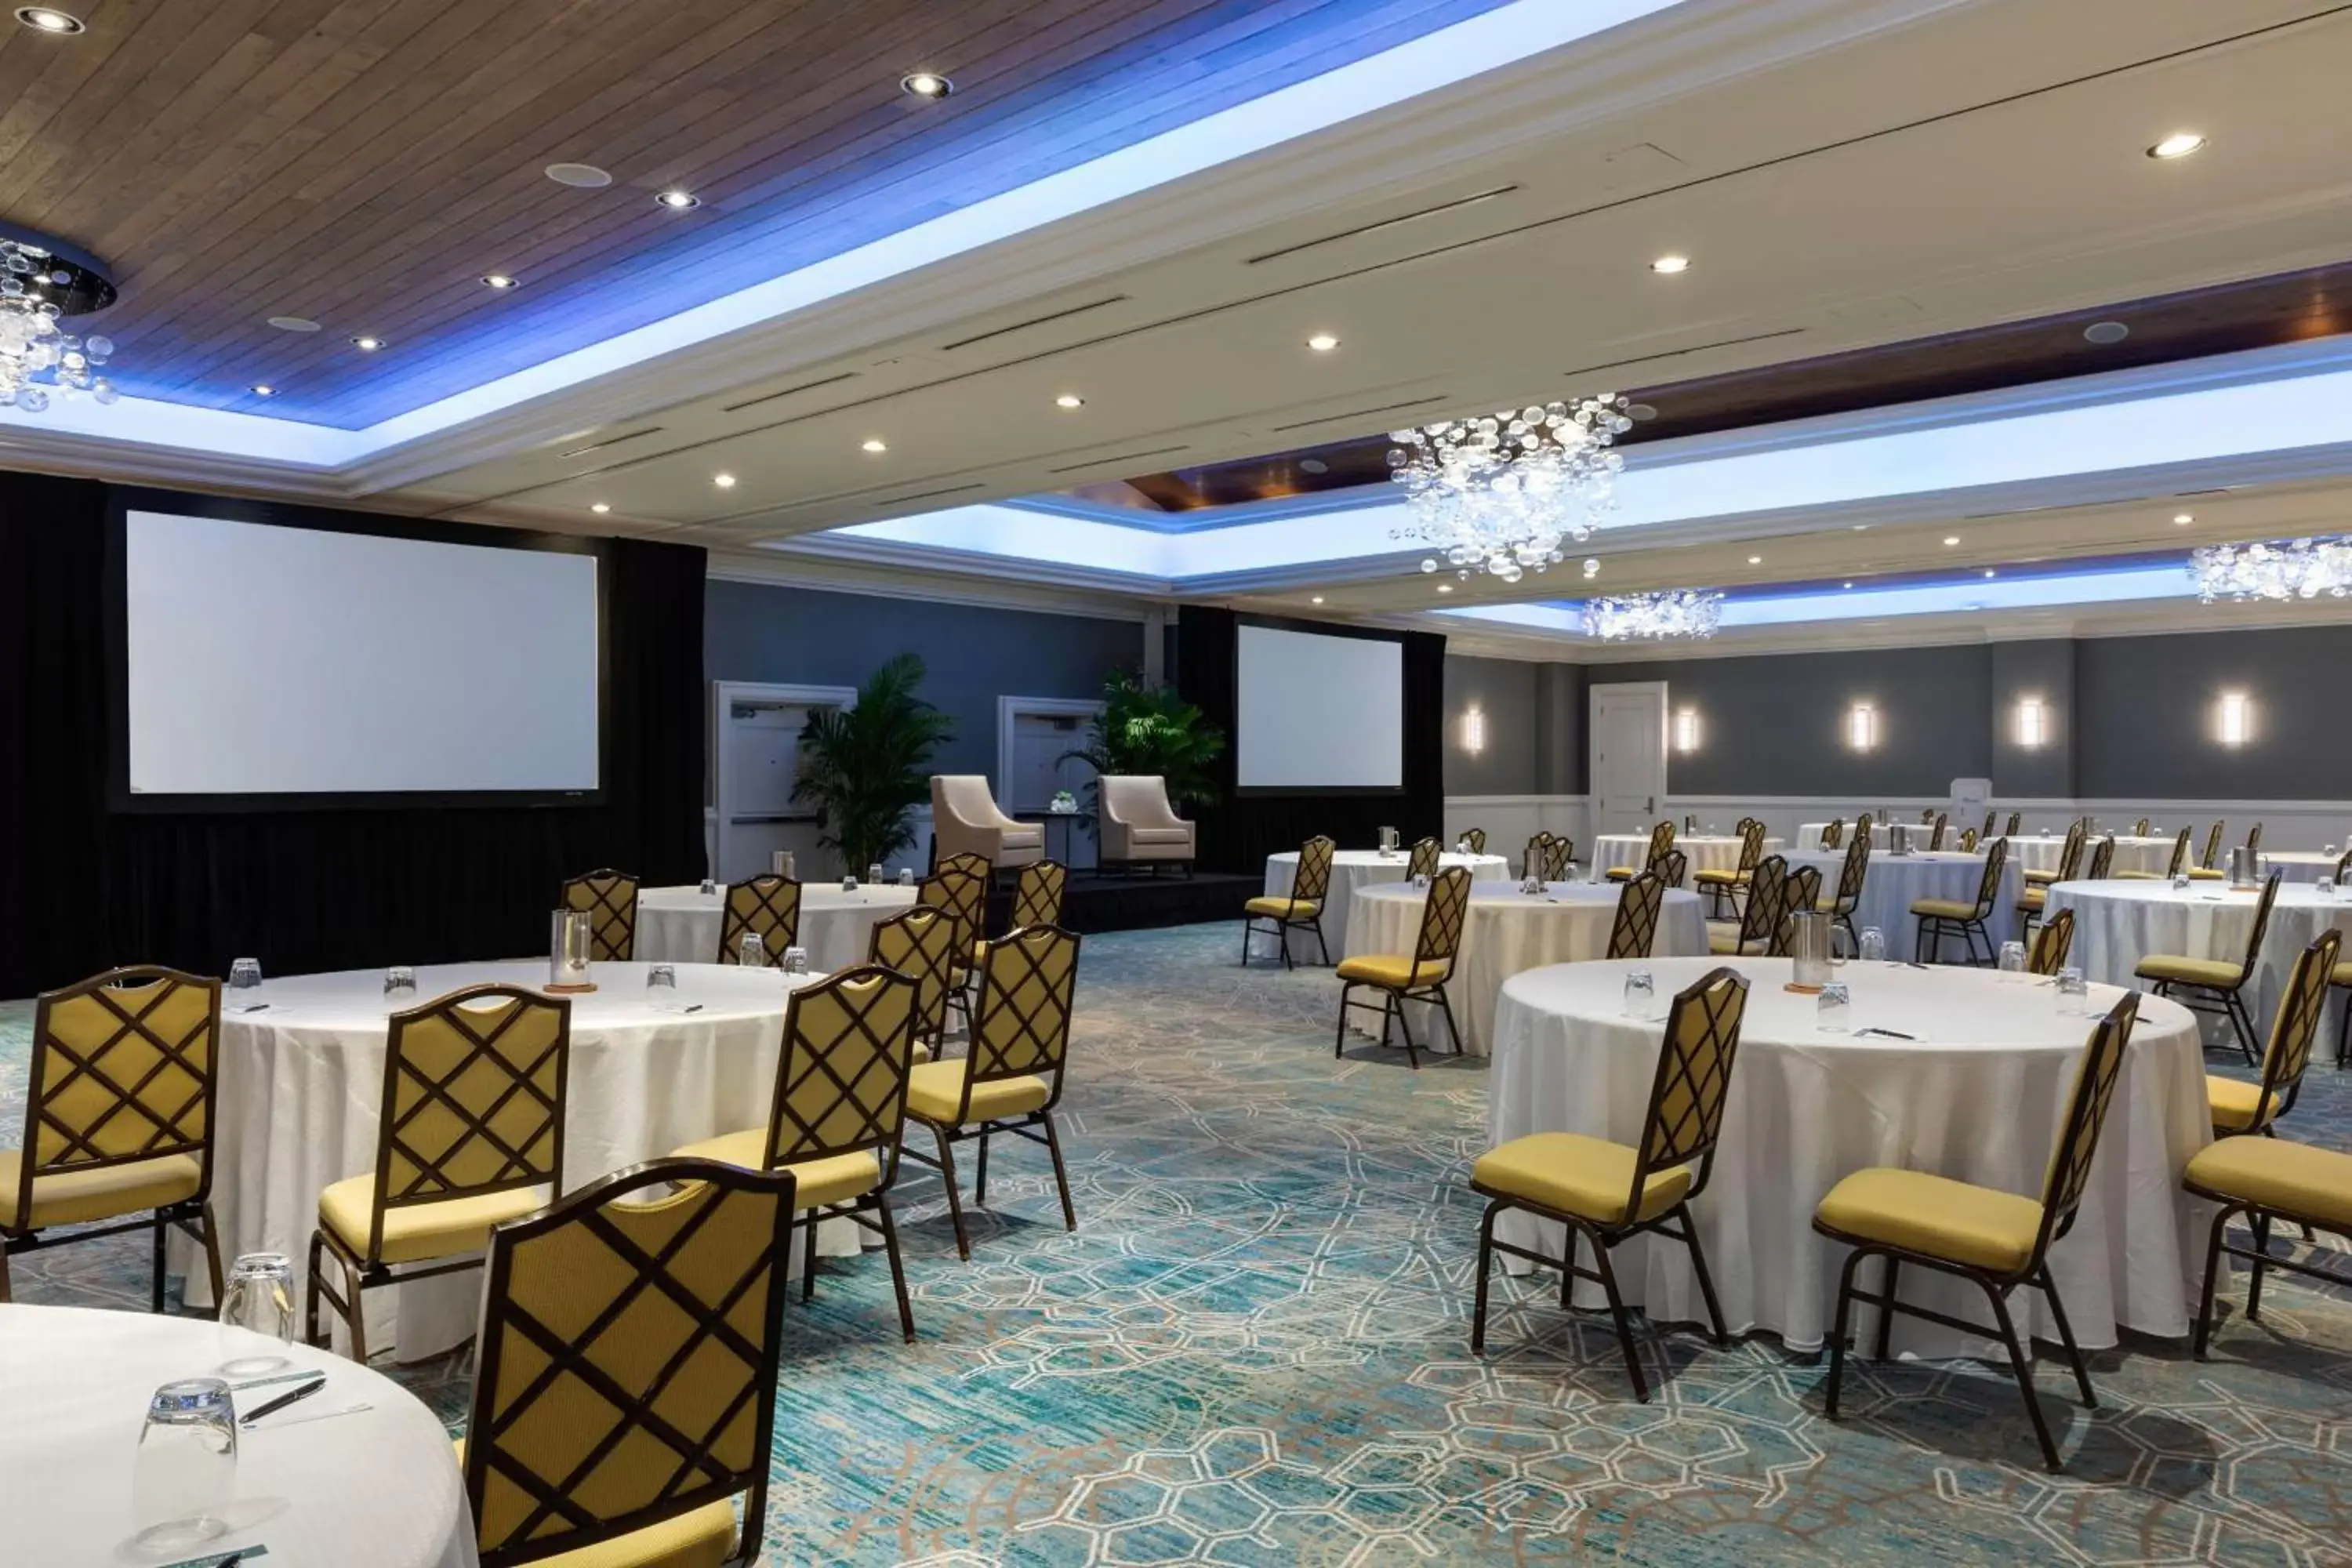 Meeting/conference room, Banquet Facilities in Hyatt Regency Clearwater Beach Resort & Spa